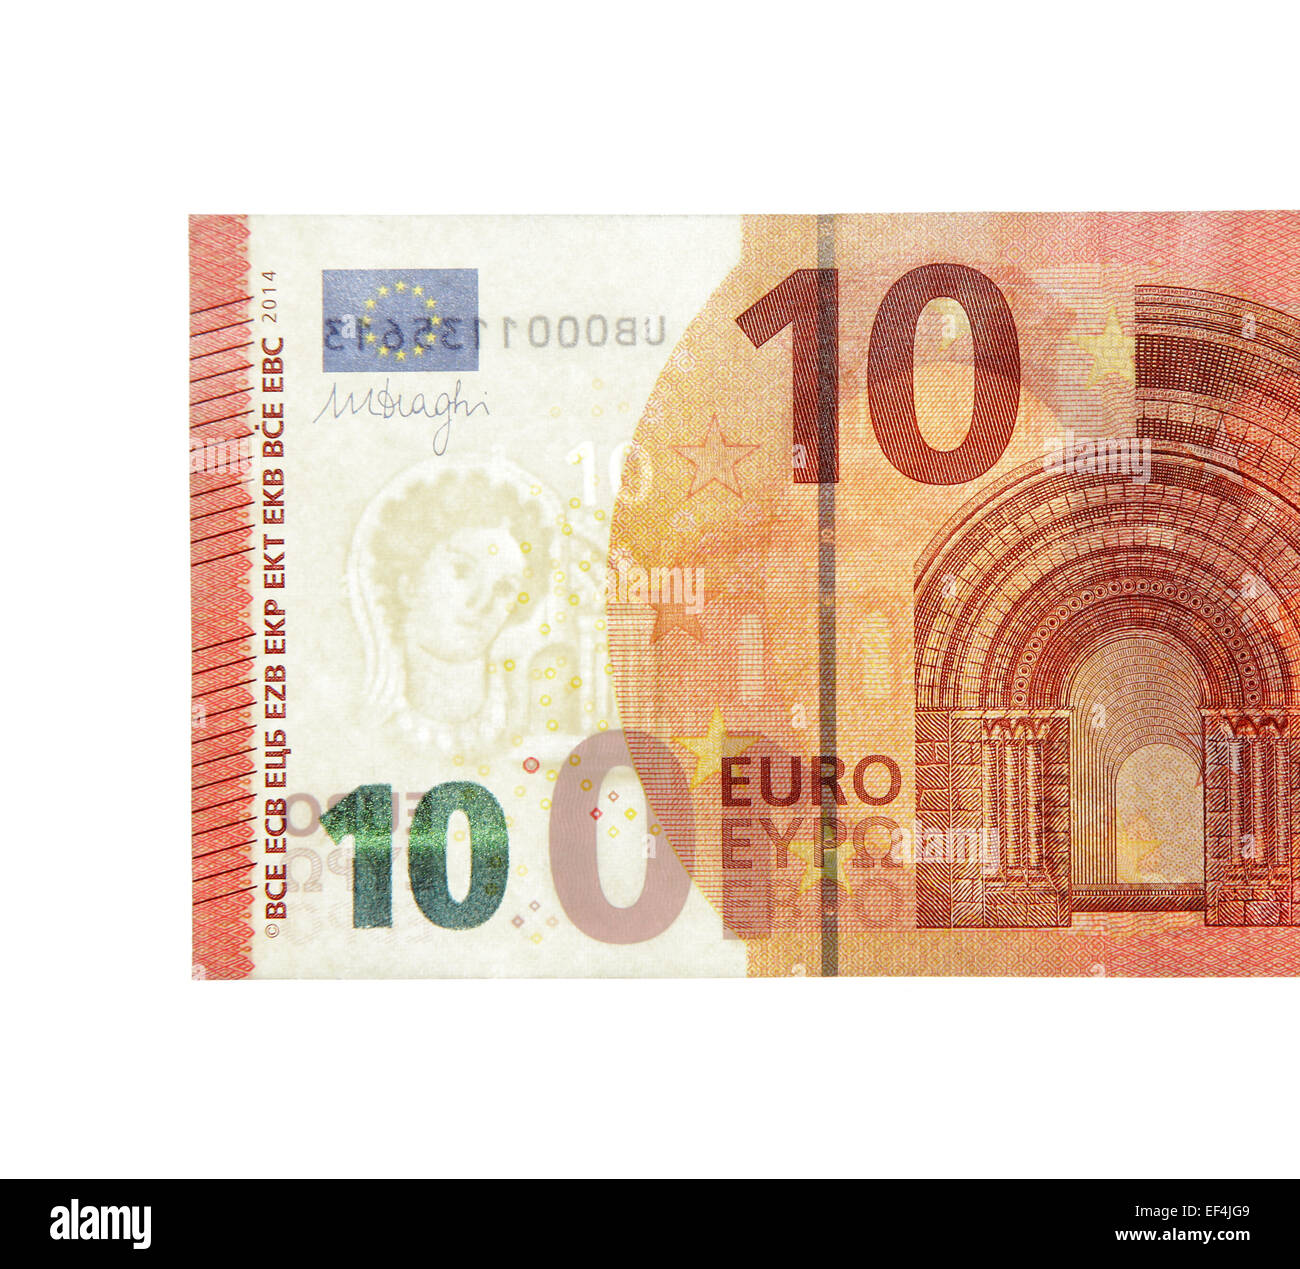 Lten 10 Euro ändern Geld Wirtschaft Währung Europäische Union global zukünftige Umwandlung aktive Währung Greenback Banknotenpapier neue Stockfoto